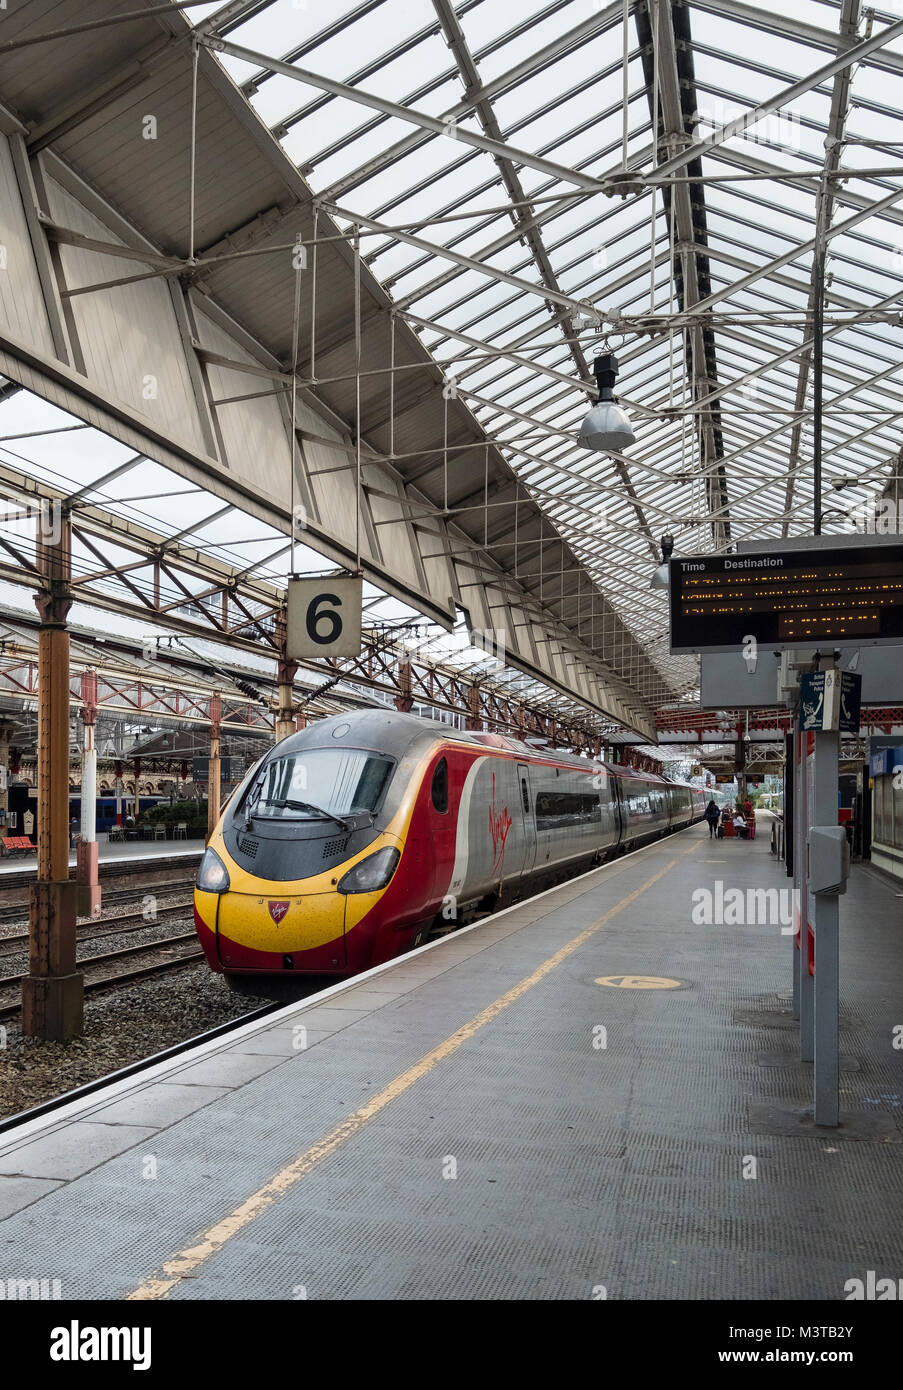 Virgin High Speed Train at Crewe Station, Crewe, Cheshire, England, UK Stock Photo